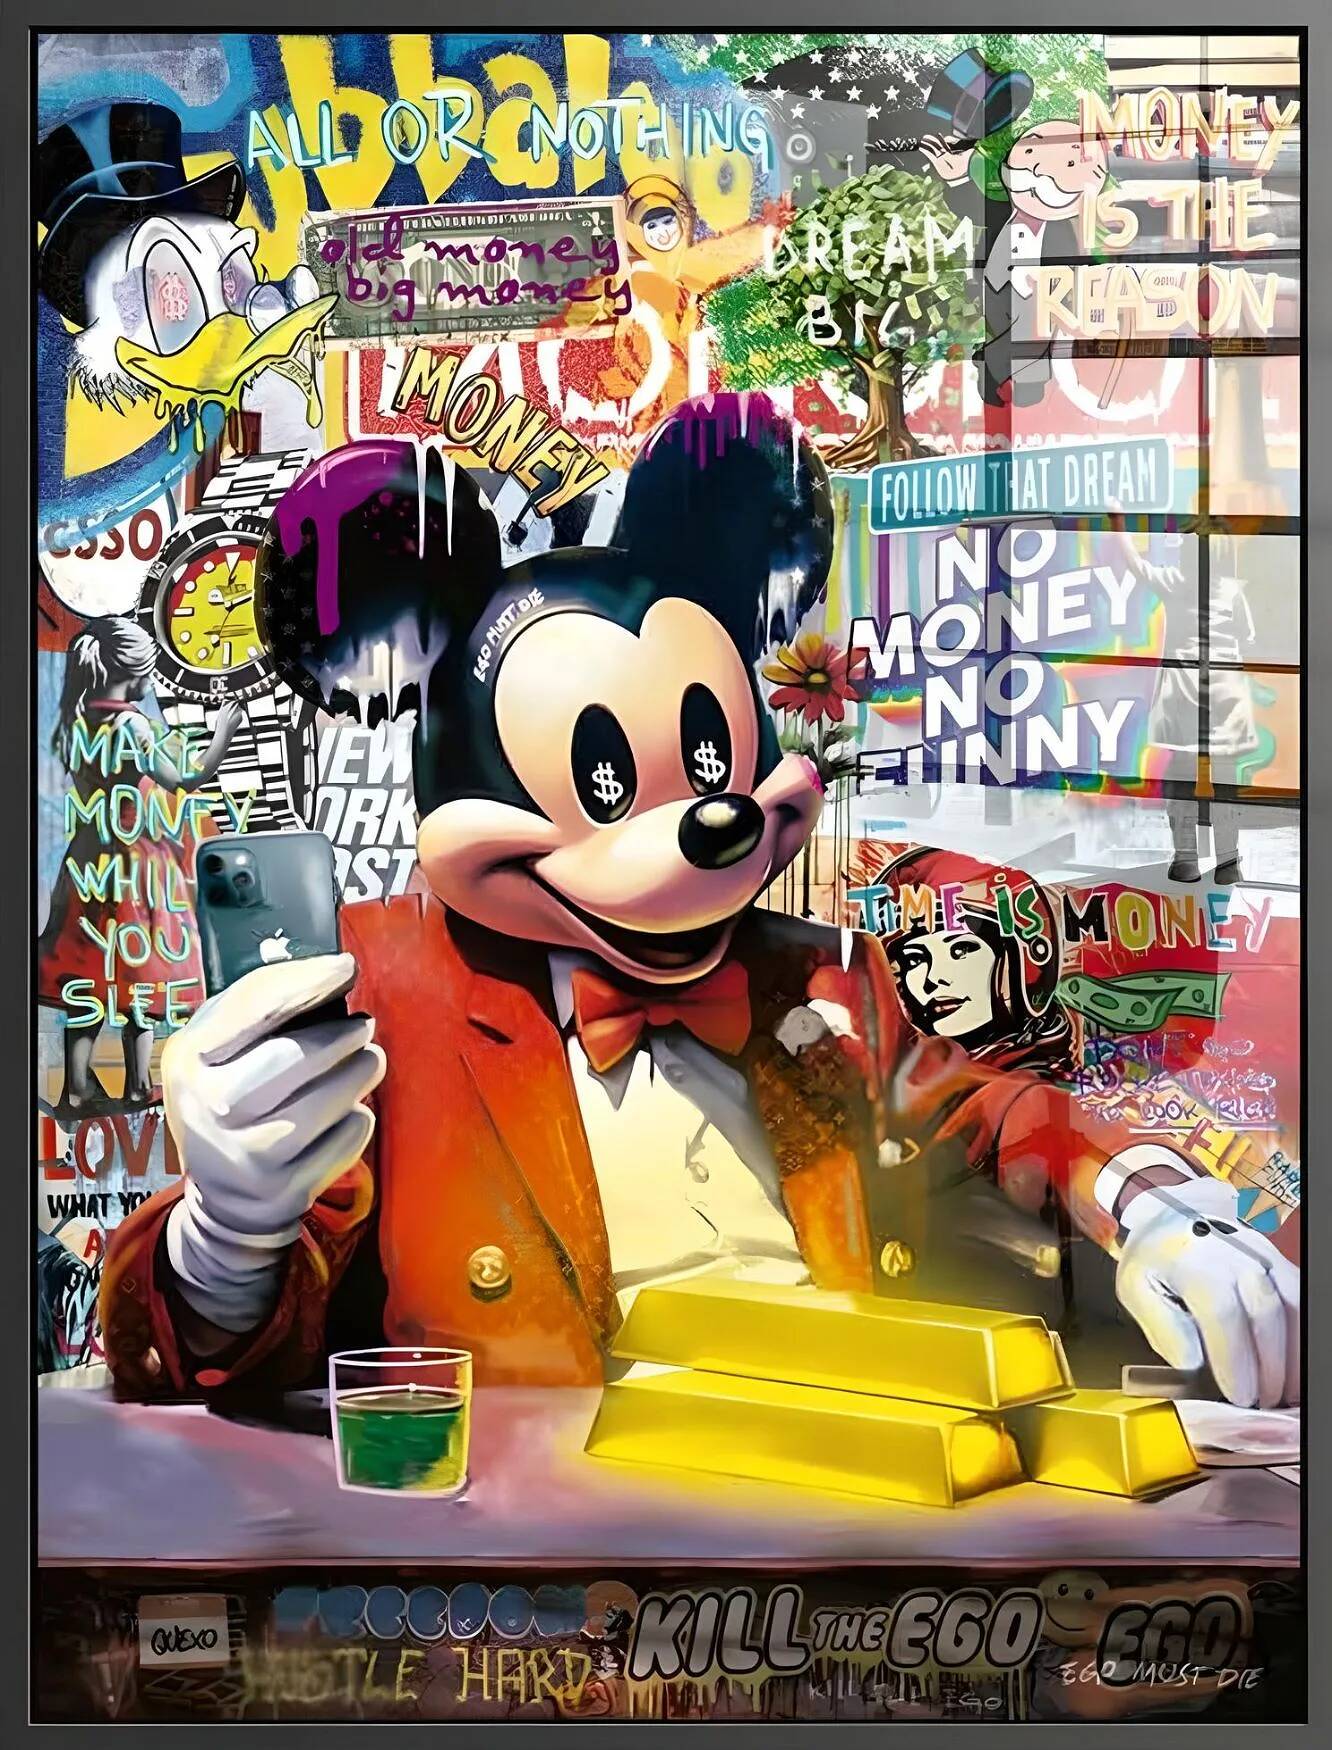 Tableau acrylique Mickey Business noir